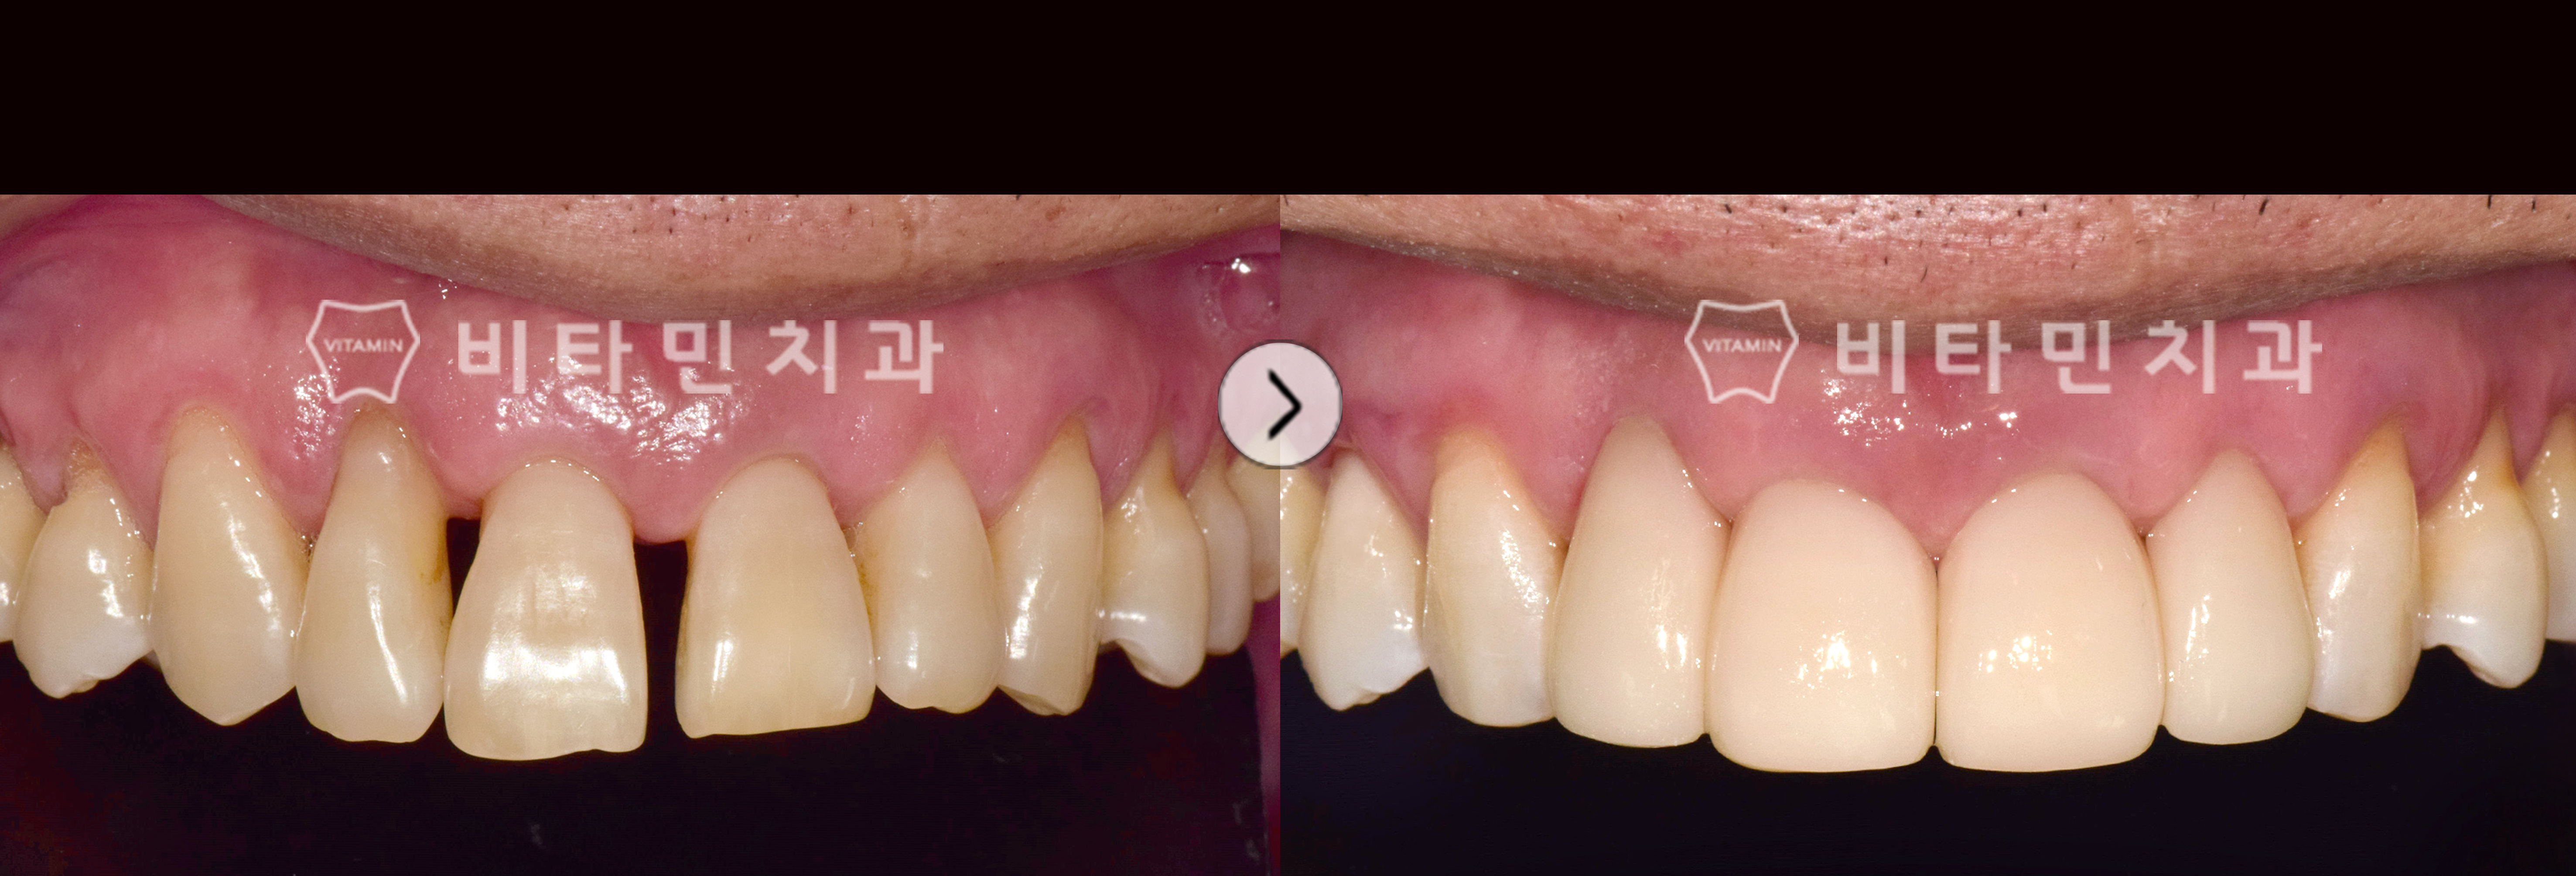 벌어진 치열 및 고르지 못한 잇몸라인 비타코팅으로 볼륨감있는 치아로 개선